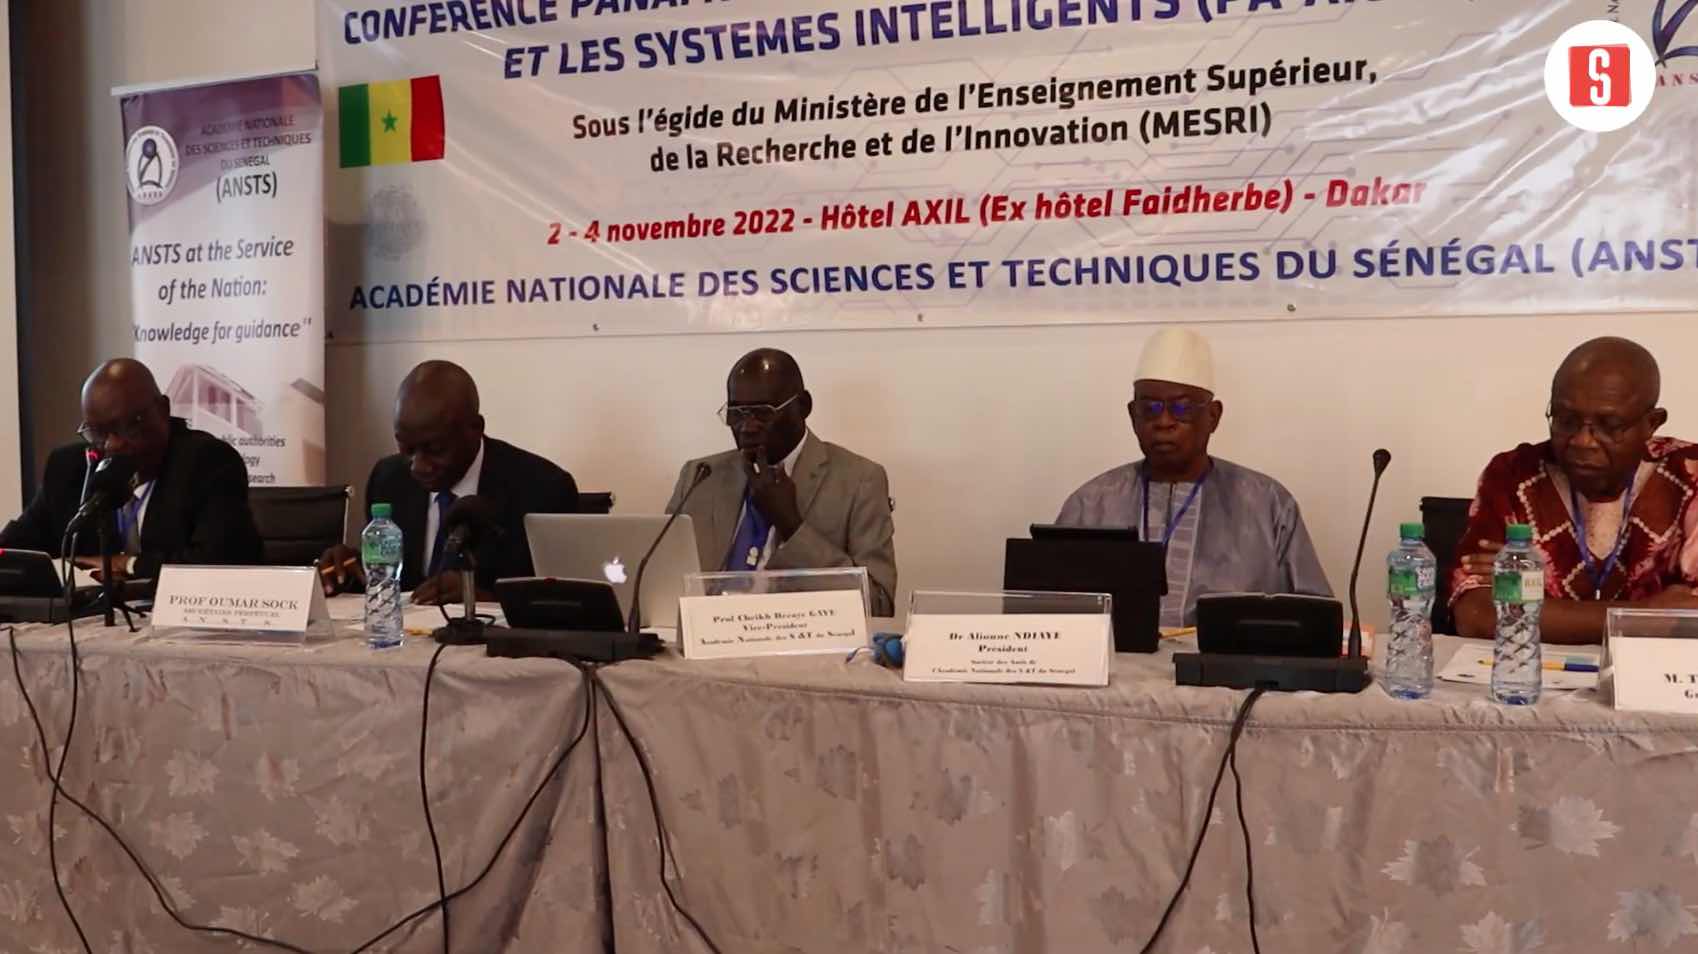 Conf Rence Panafricaine Des Experts Se Penchent Sur Lintelligence Artificielle